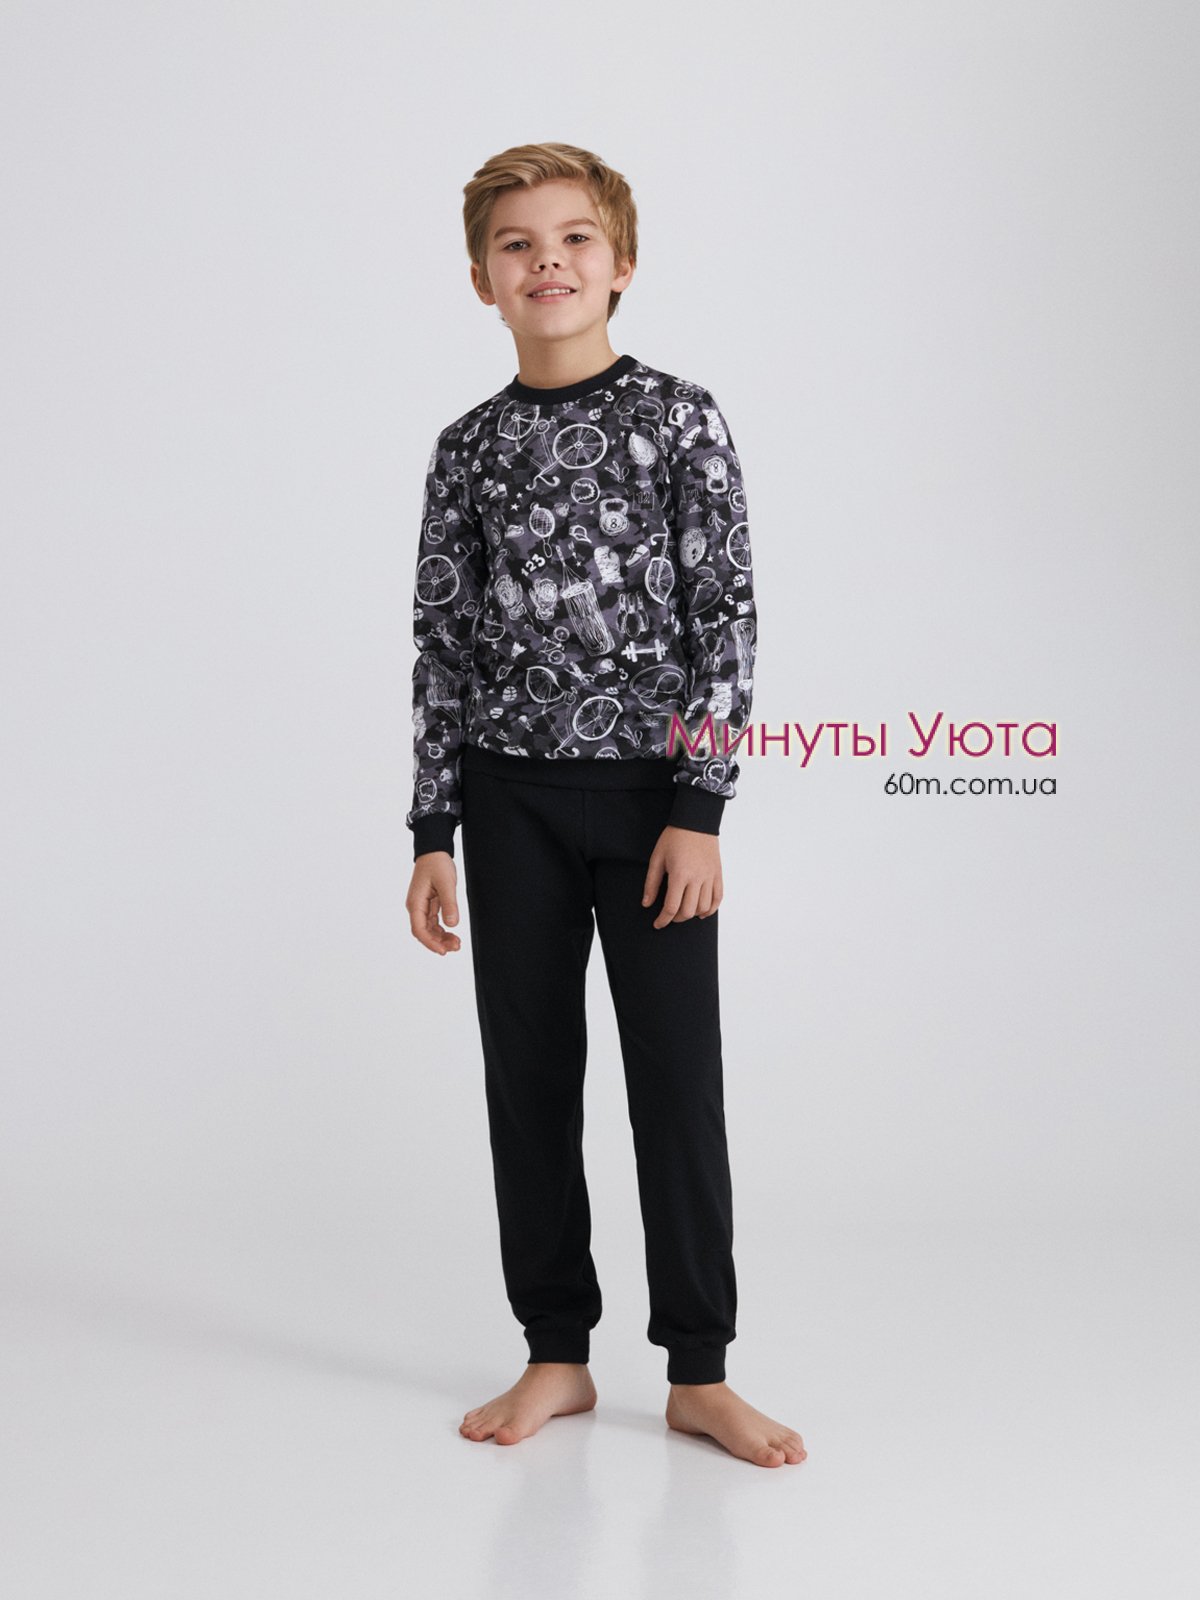 Пижама для мальчика-подростка серо-черного цвета в графический принт на свитшоте 